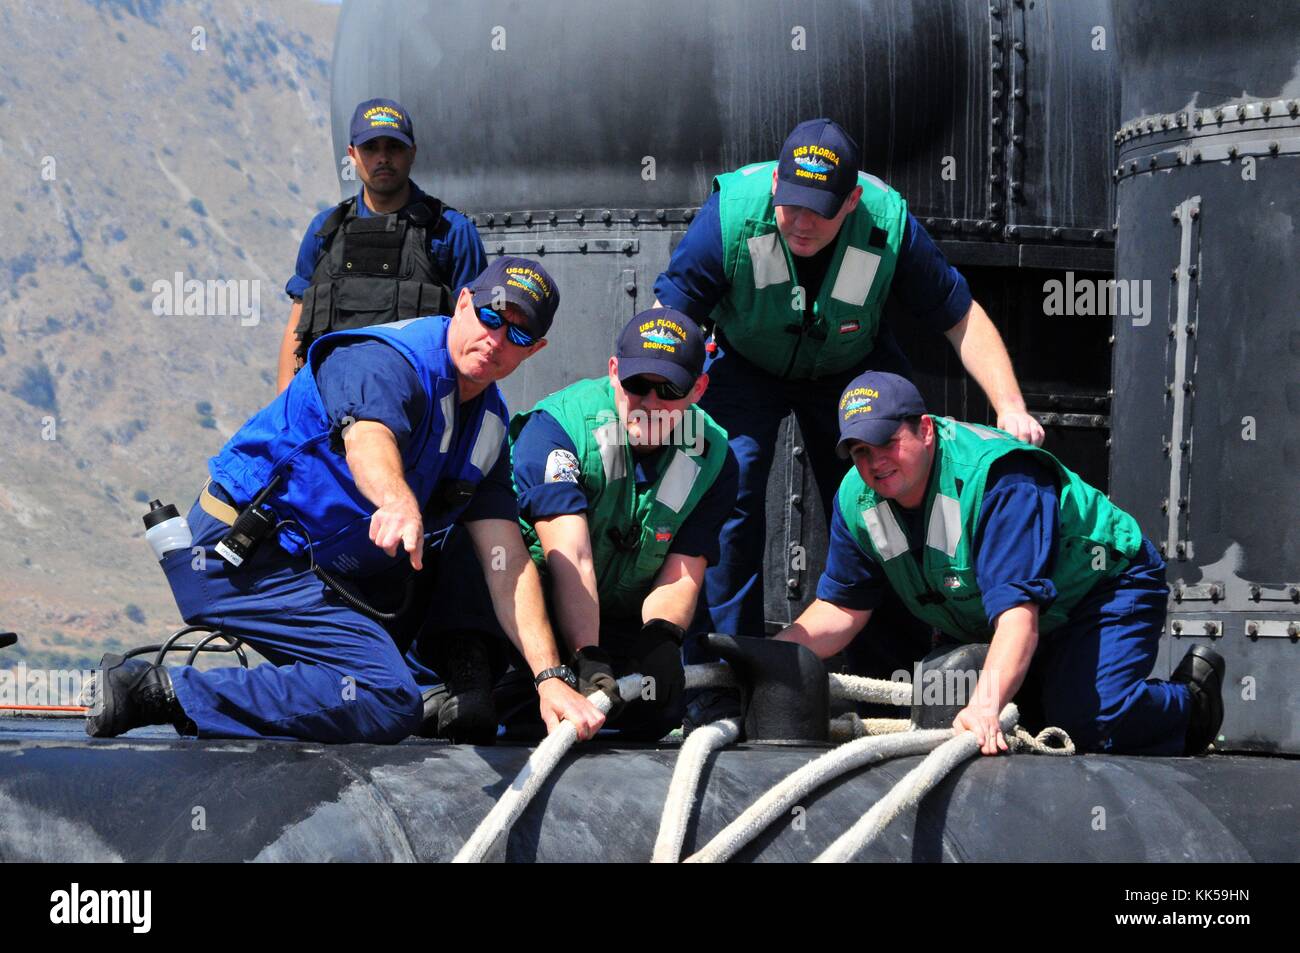 Segler mit der Ohio-Klasse geführt - Raketen-U-Boots uss Florida ssgn 728 Verhalten festmachen Arbeiten wie das U-Boot für einen Hafen Besuchen auf der Insel Kreta, souda Bay, Griechenland, 2012 eintrifft. Mit freundlicher Genehmigung von Herrn Paul Farley/US Navy. Stockfoto